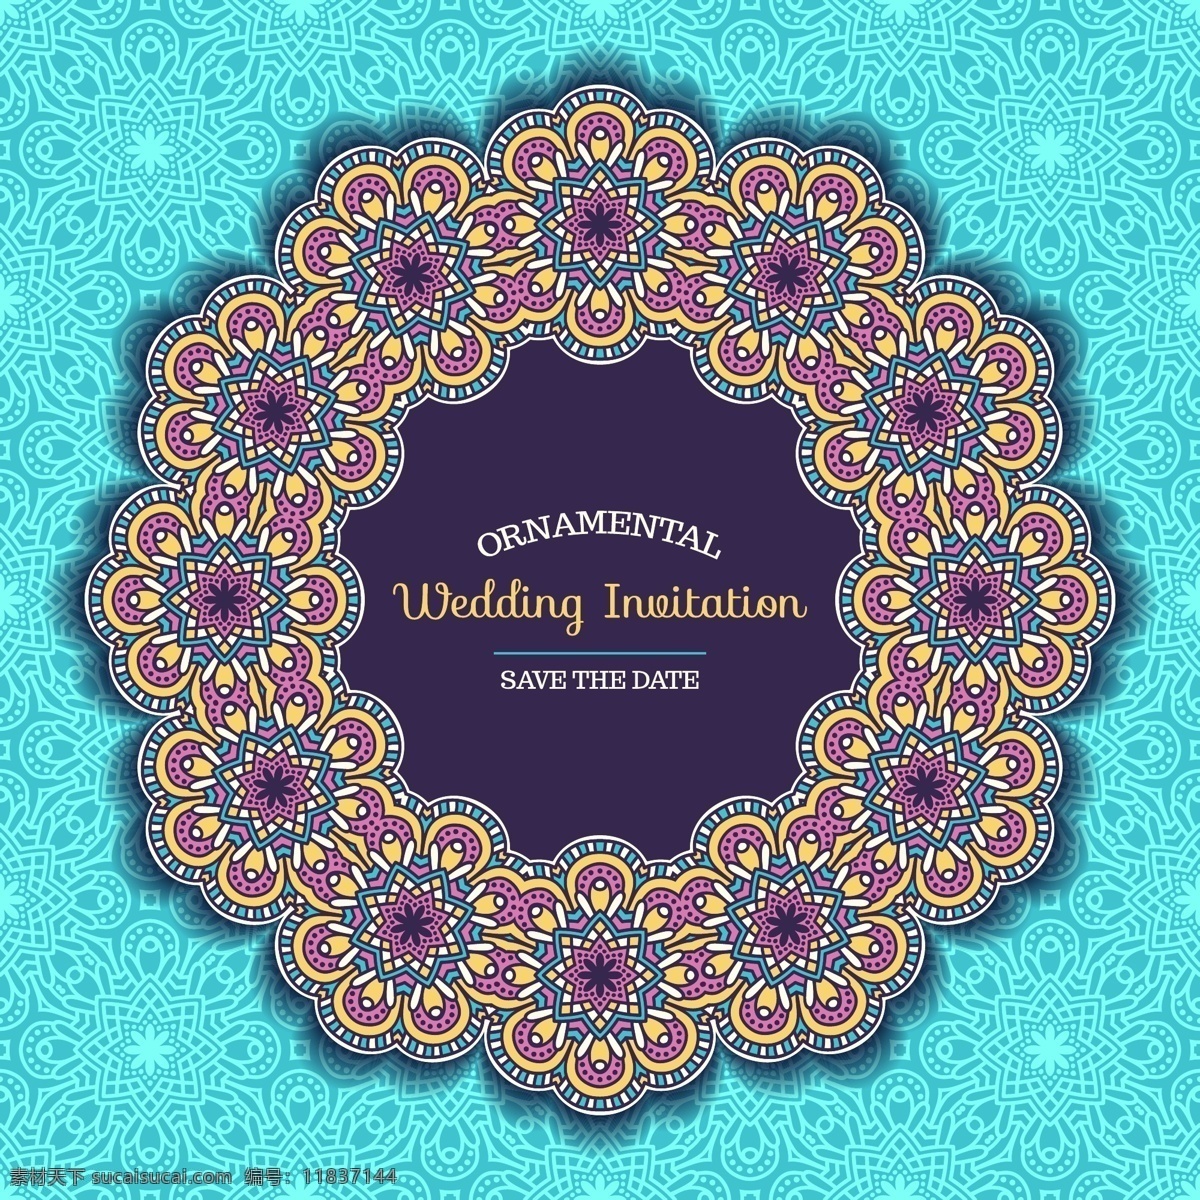 曼陀罗 婚礼 请柬 鲜花 花卉 爱情 装饰品 时尚 手工 素描 色彩 阿拉伯语 卡片 印度 庆典 新娘 情侣 部落